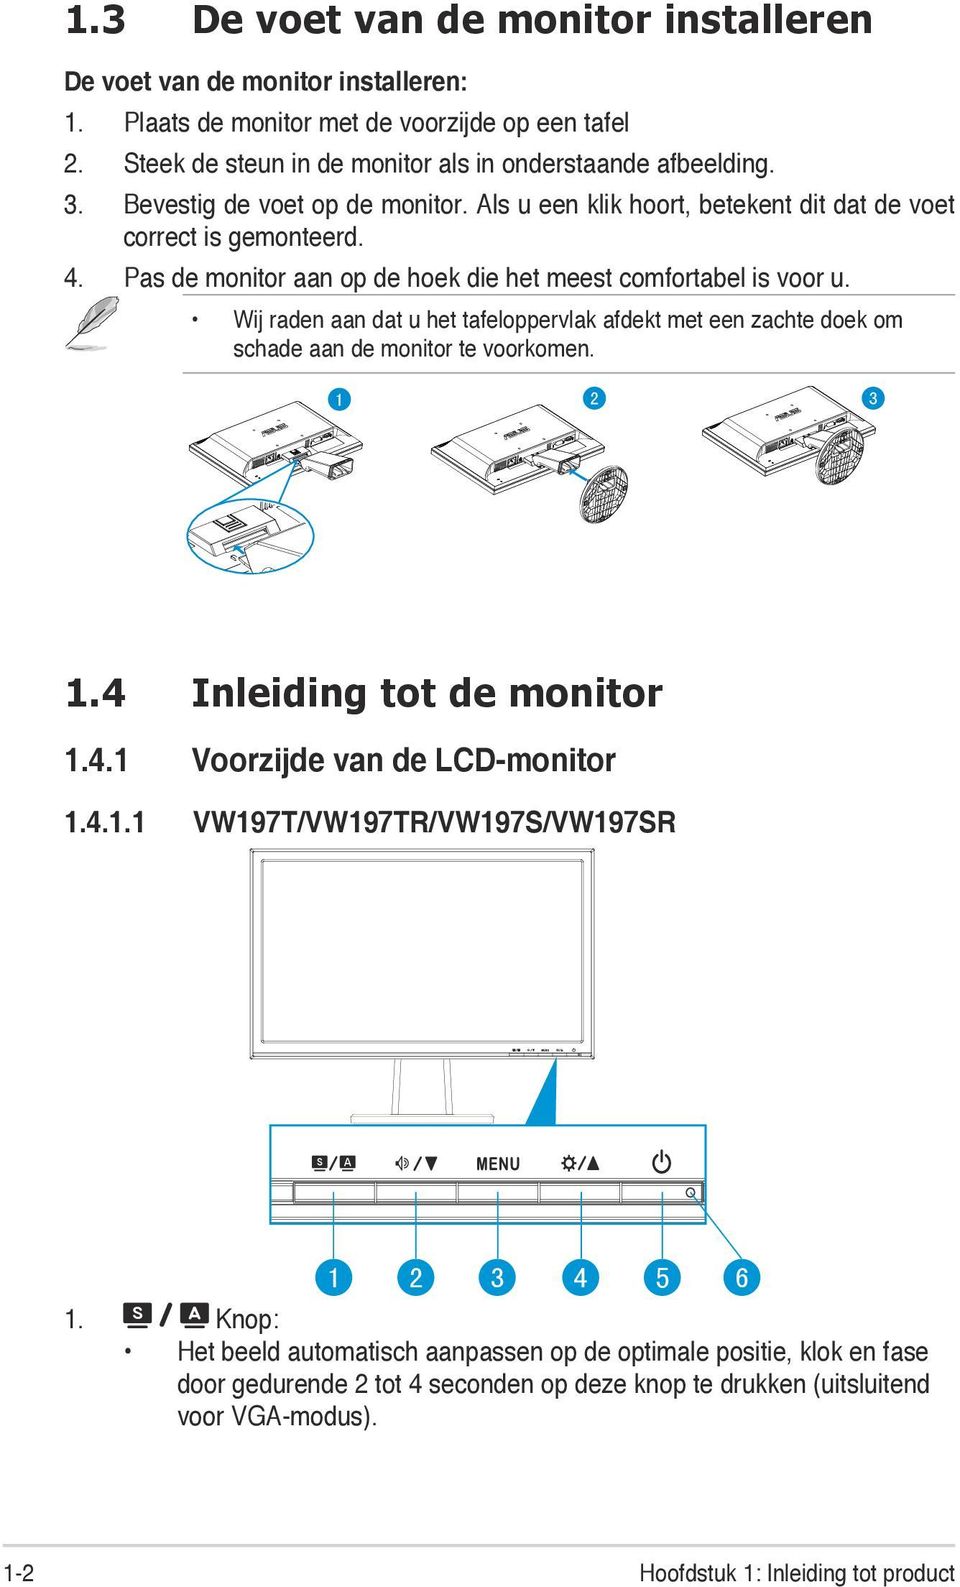 Wij raden aan dat u het tafeloppervlak afdekt met een zachte doek om schade aan de monitor te voorkomen. 1 2 3 1.4 Inleiding tot de monitor 1.4.1 Voorzijde van de LCD-monitor 1.4.1.1 VW197T/VW197TR/VW197S/VW197SR 1 2 3 4 5 6 1.